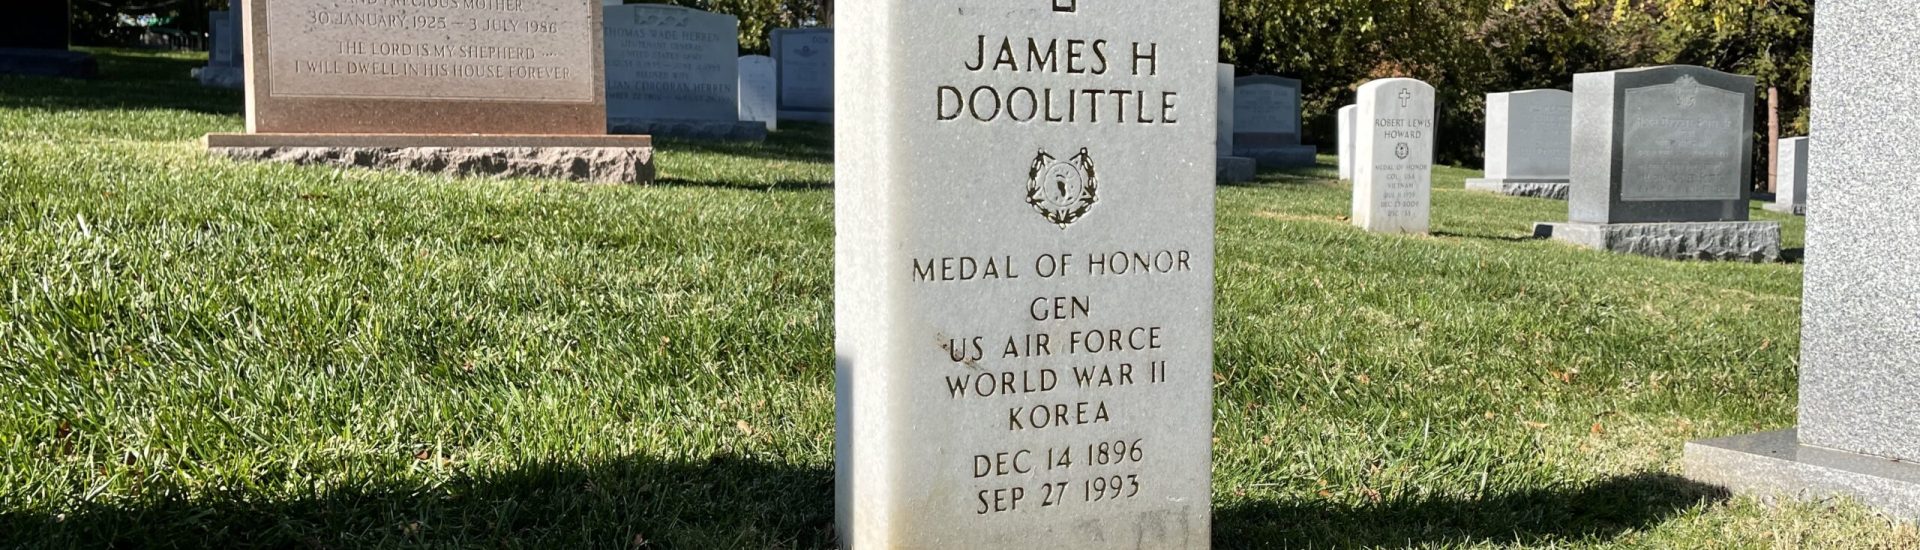 James Doolittle